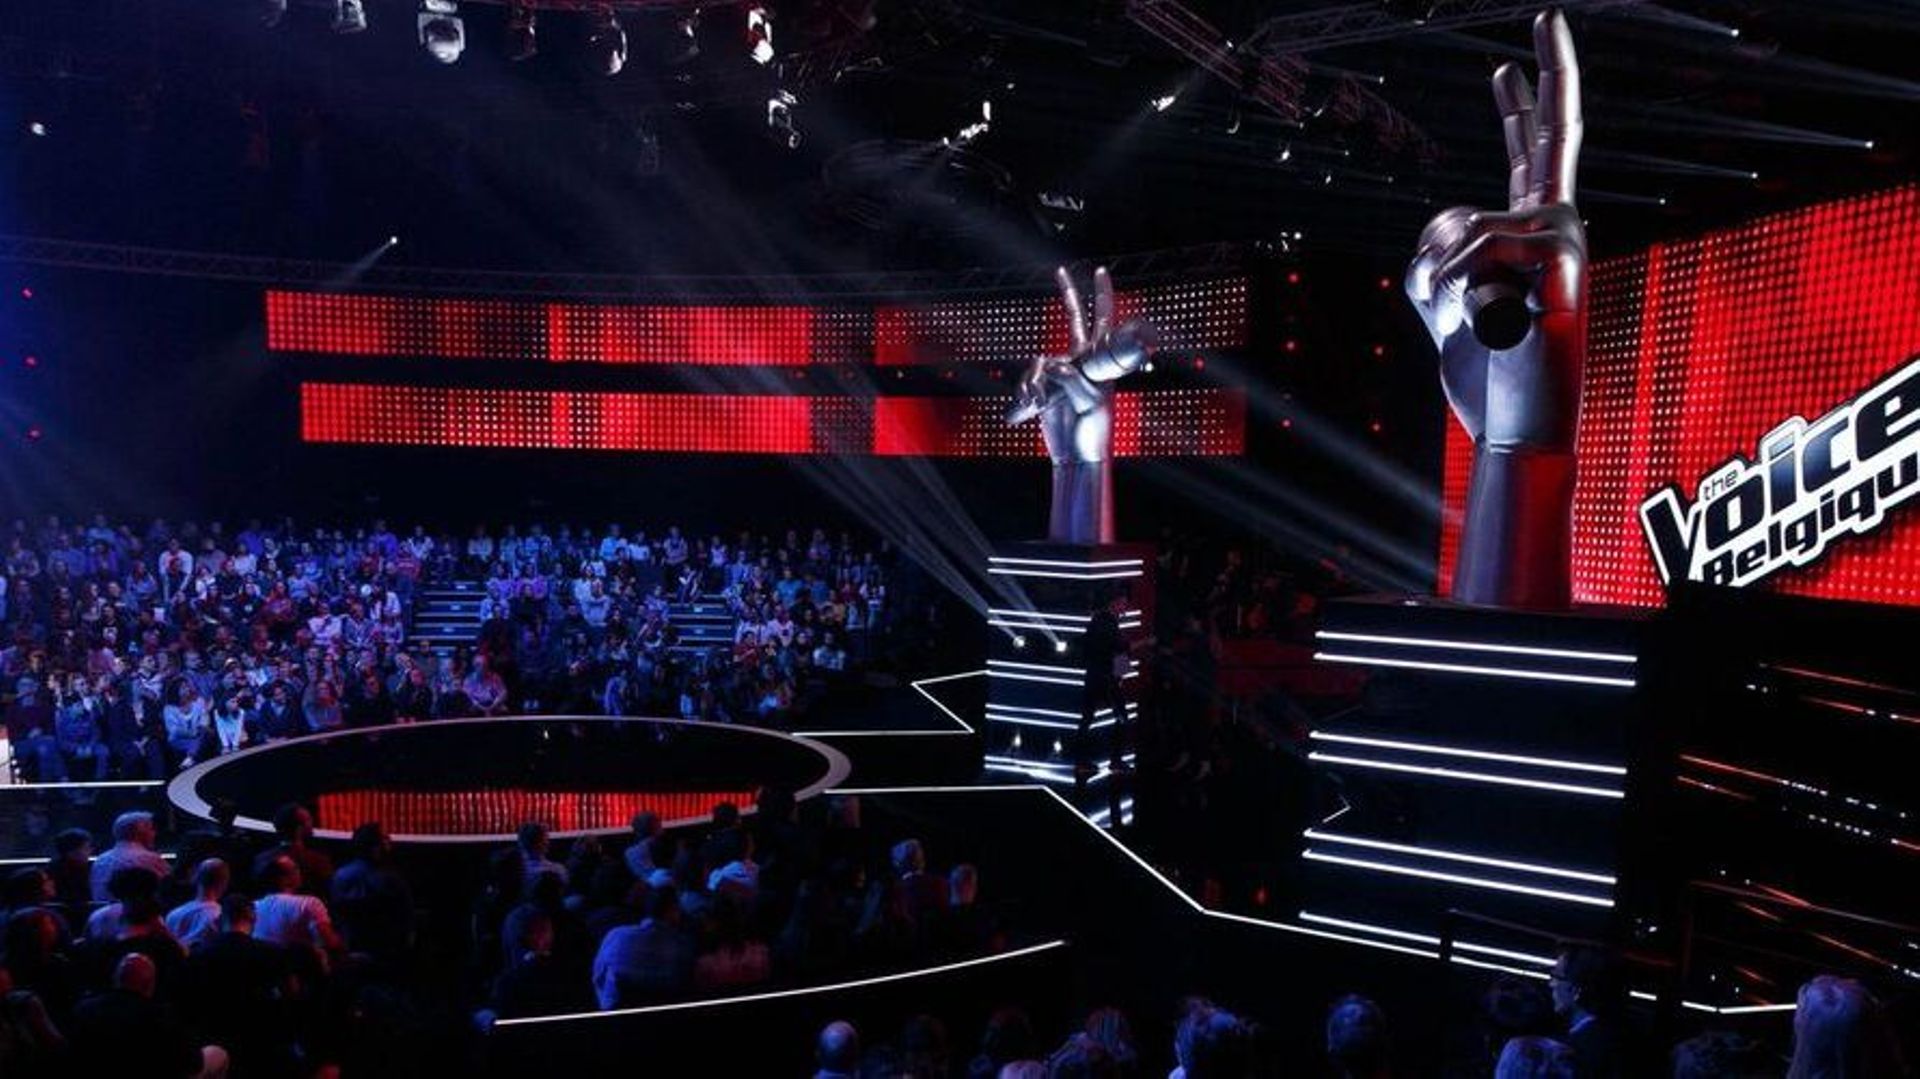 concours : tentez de remporter les dernières places assister au premier live de The Voice Belgique 